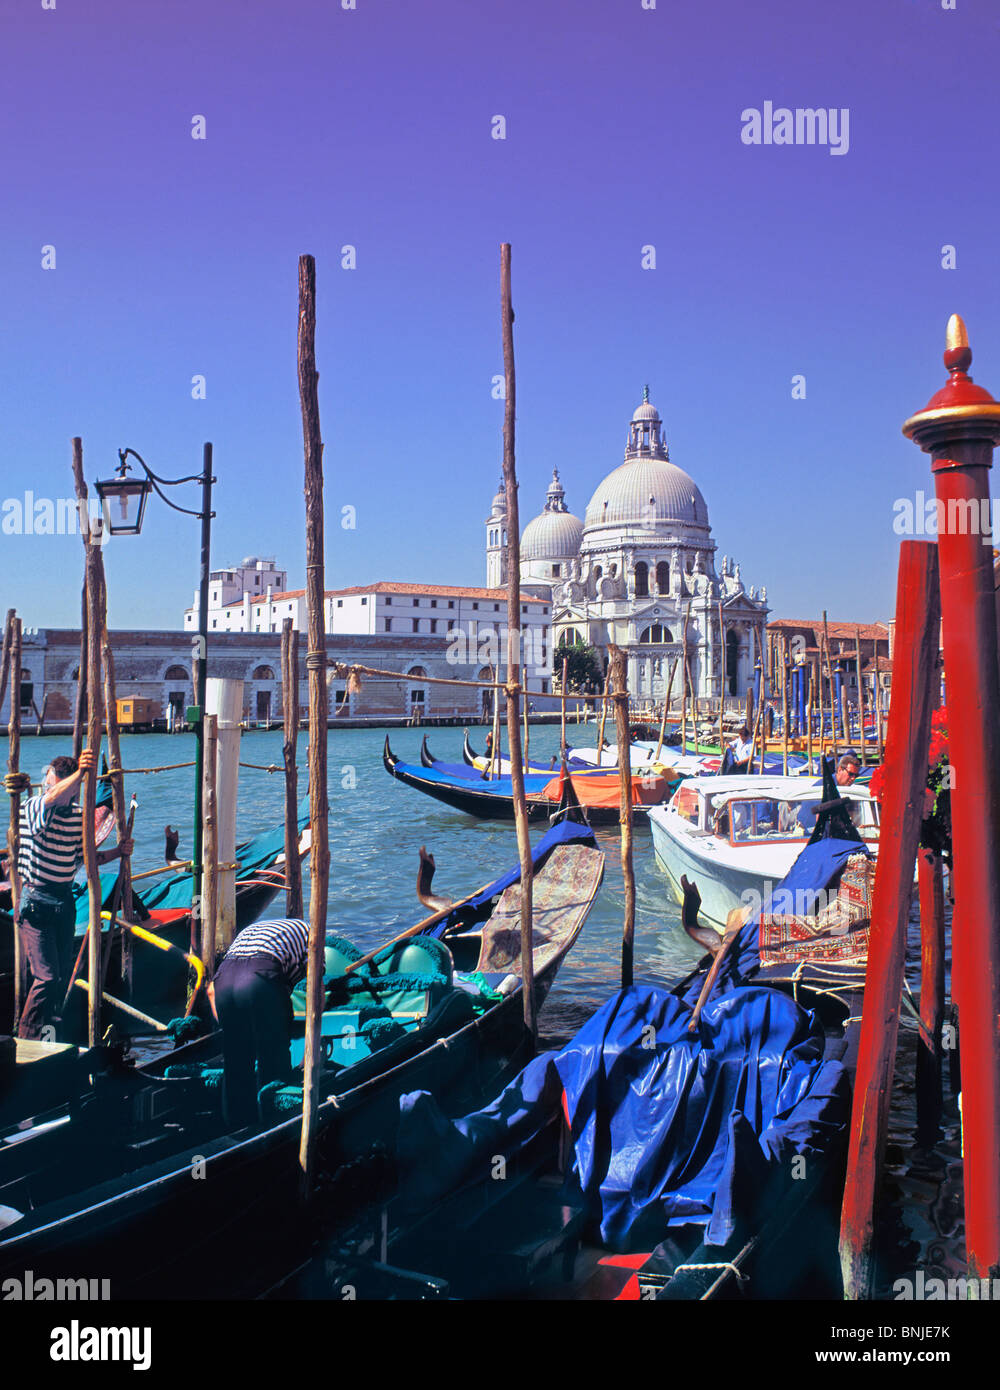 Italy Veneto Venice Architecture Art Arts Baroque Baroque Architecture Boat Boats Building Buildings Canal Church City Stock Photo